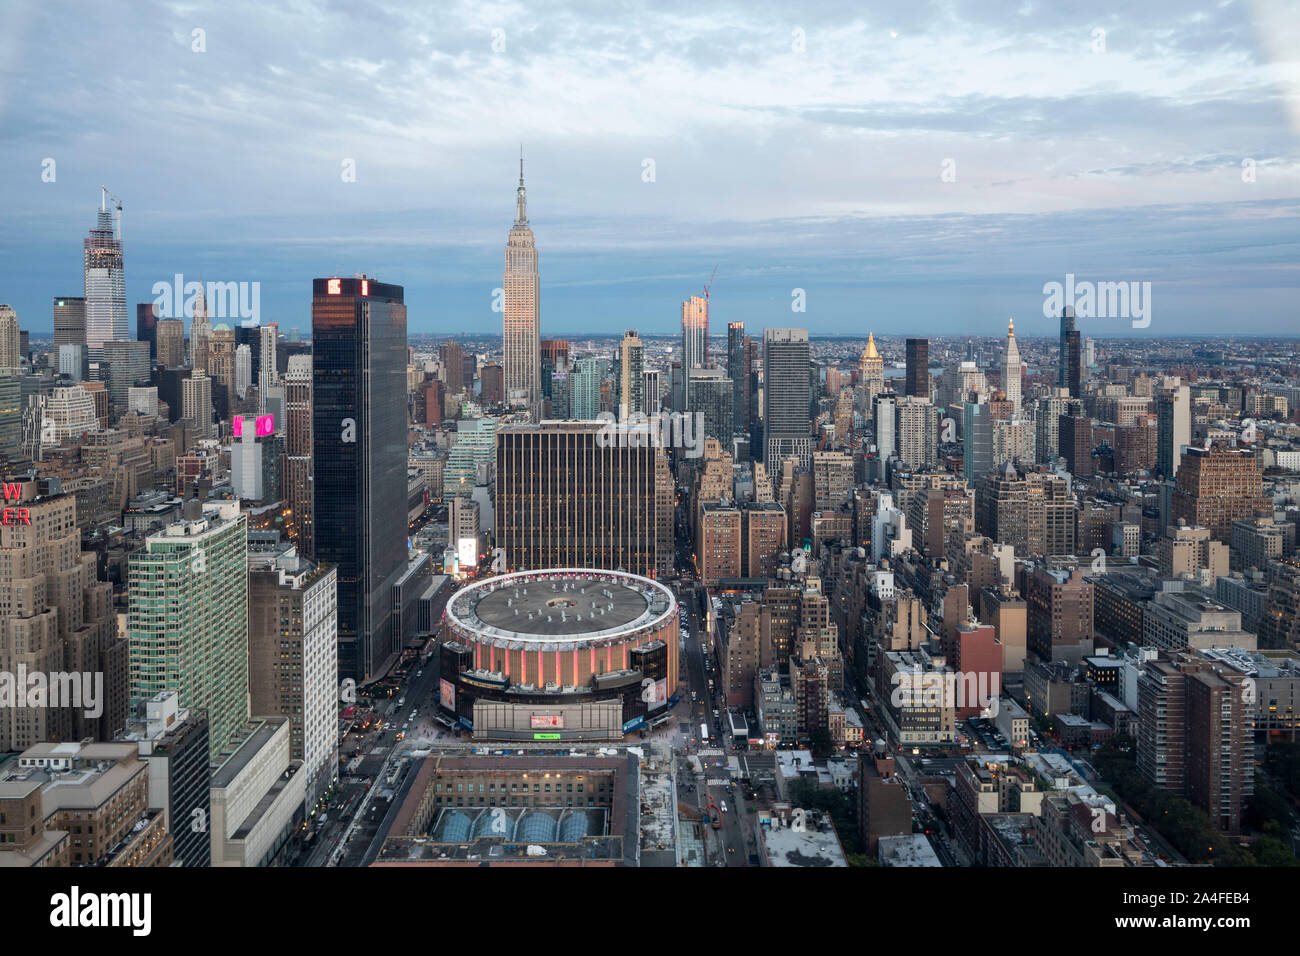 NEW YORK CITY, NY - Ottobre 5, 2019: vista aerea del Madison Square Garden a Manhattan, New York City, NY, STATI UNITI D'AMERICA, guardando ad ovest. Foto Stock